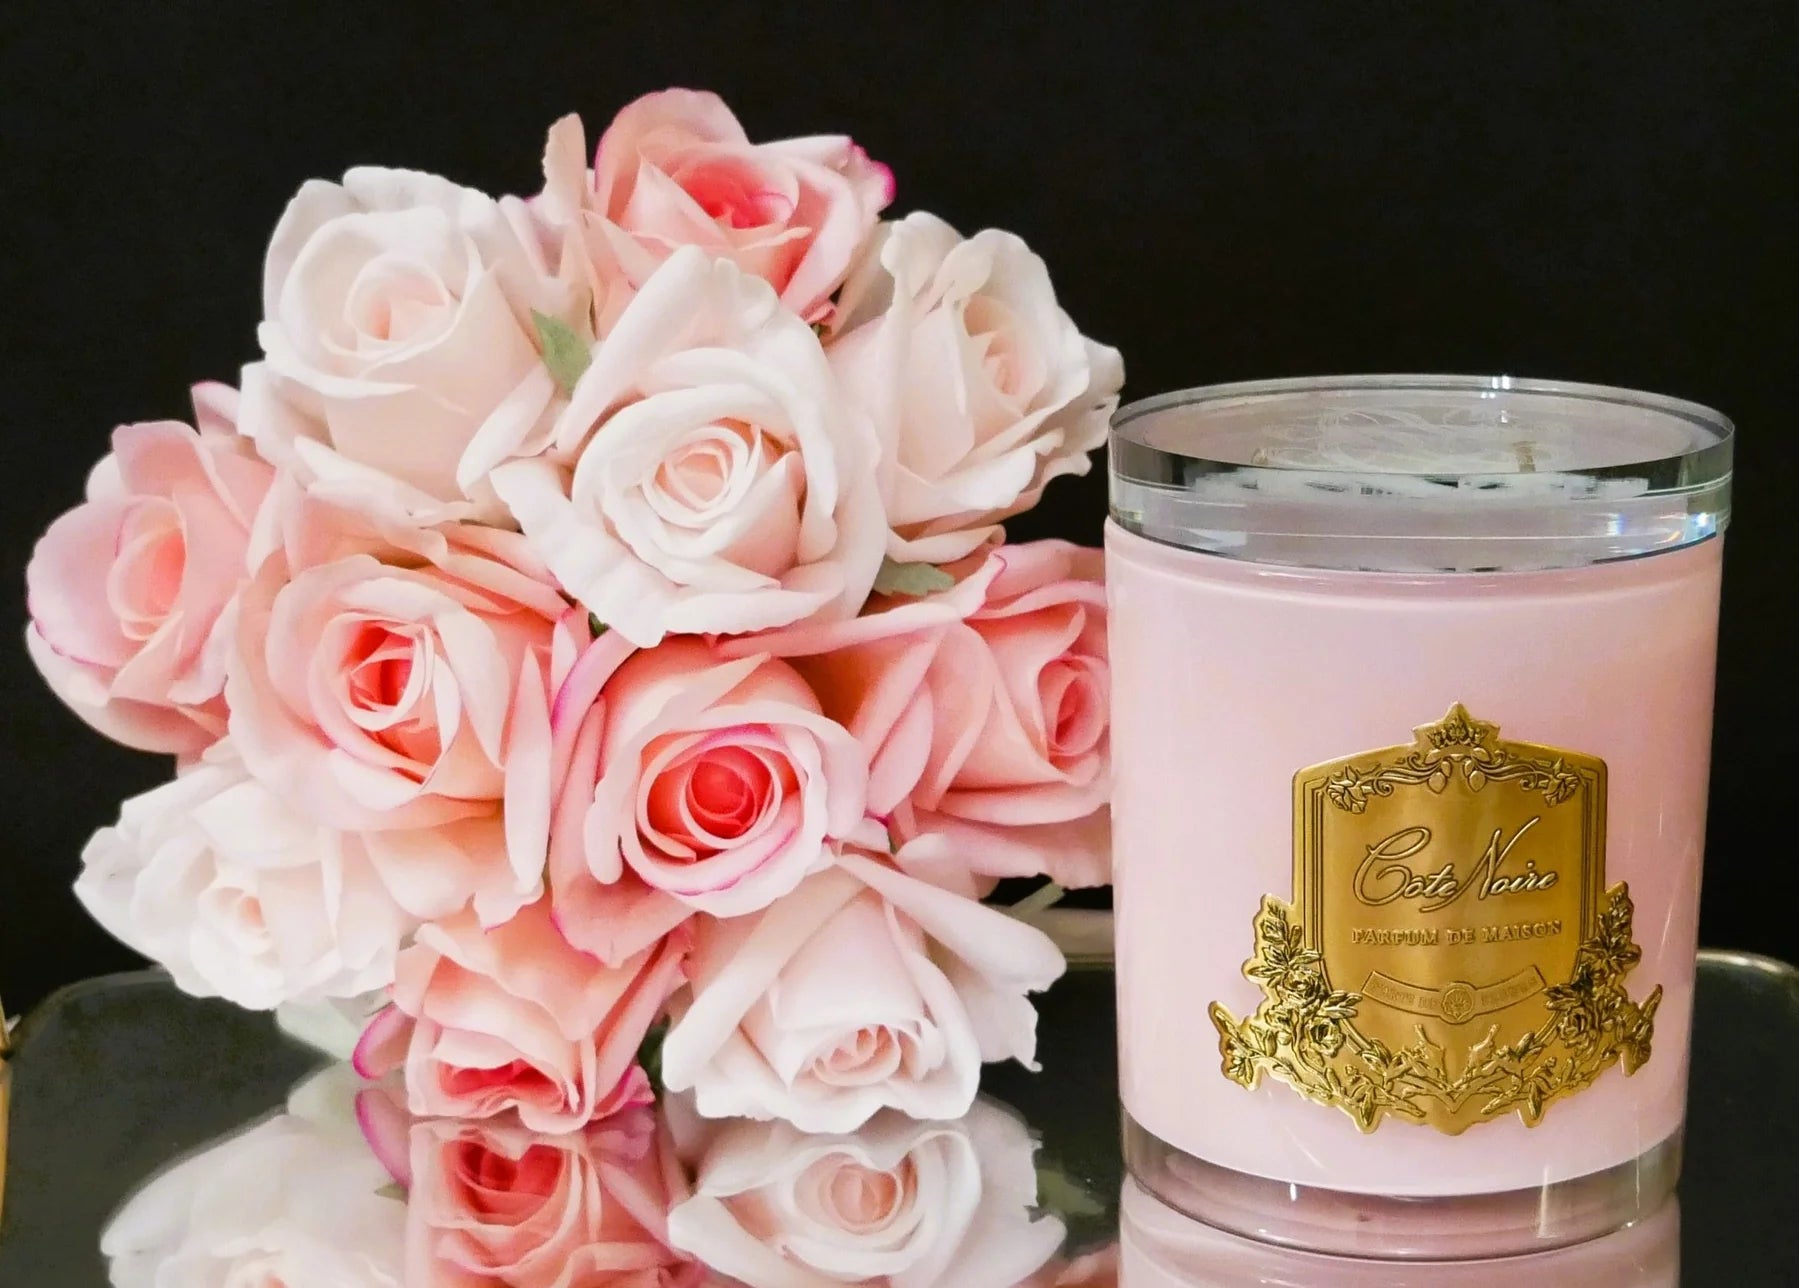 duftkerze in pinkem glas mit goldener inschrift und glasdeckel neben pinken und weissen rosen vor schwarzem hintergrund.